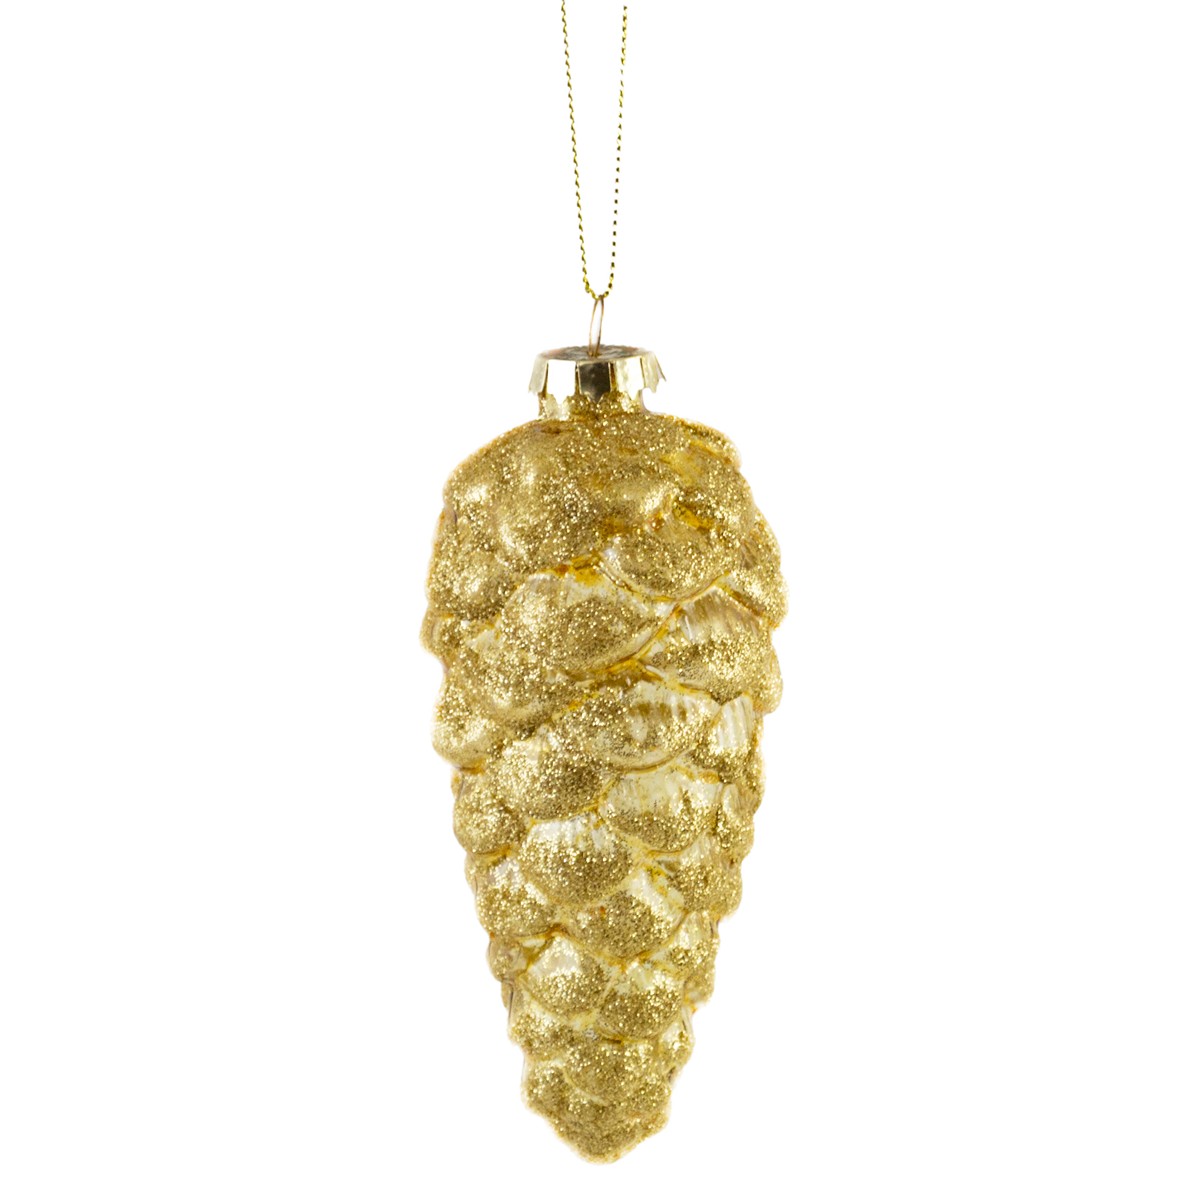 EBD843596-gold, Украшение подвесное Шишка с глиттером (стекло), 5,5х13см, золотой, 4627197637930